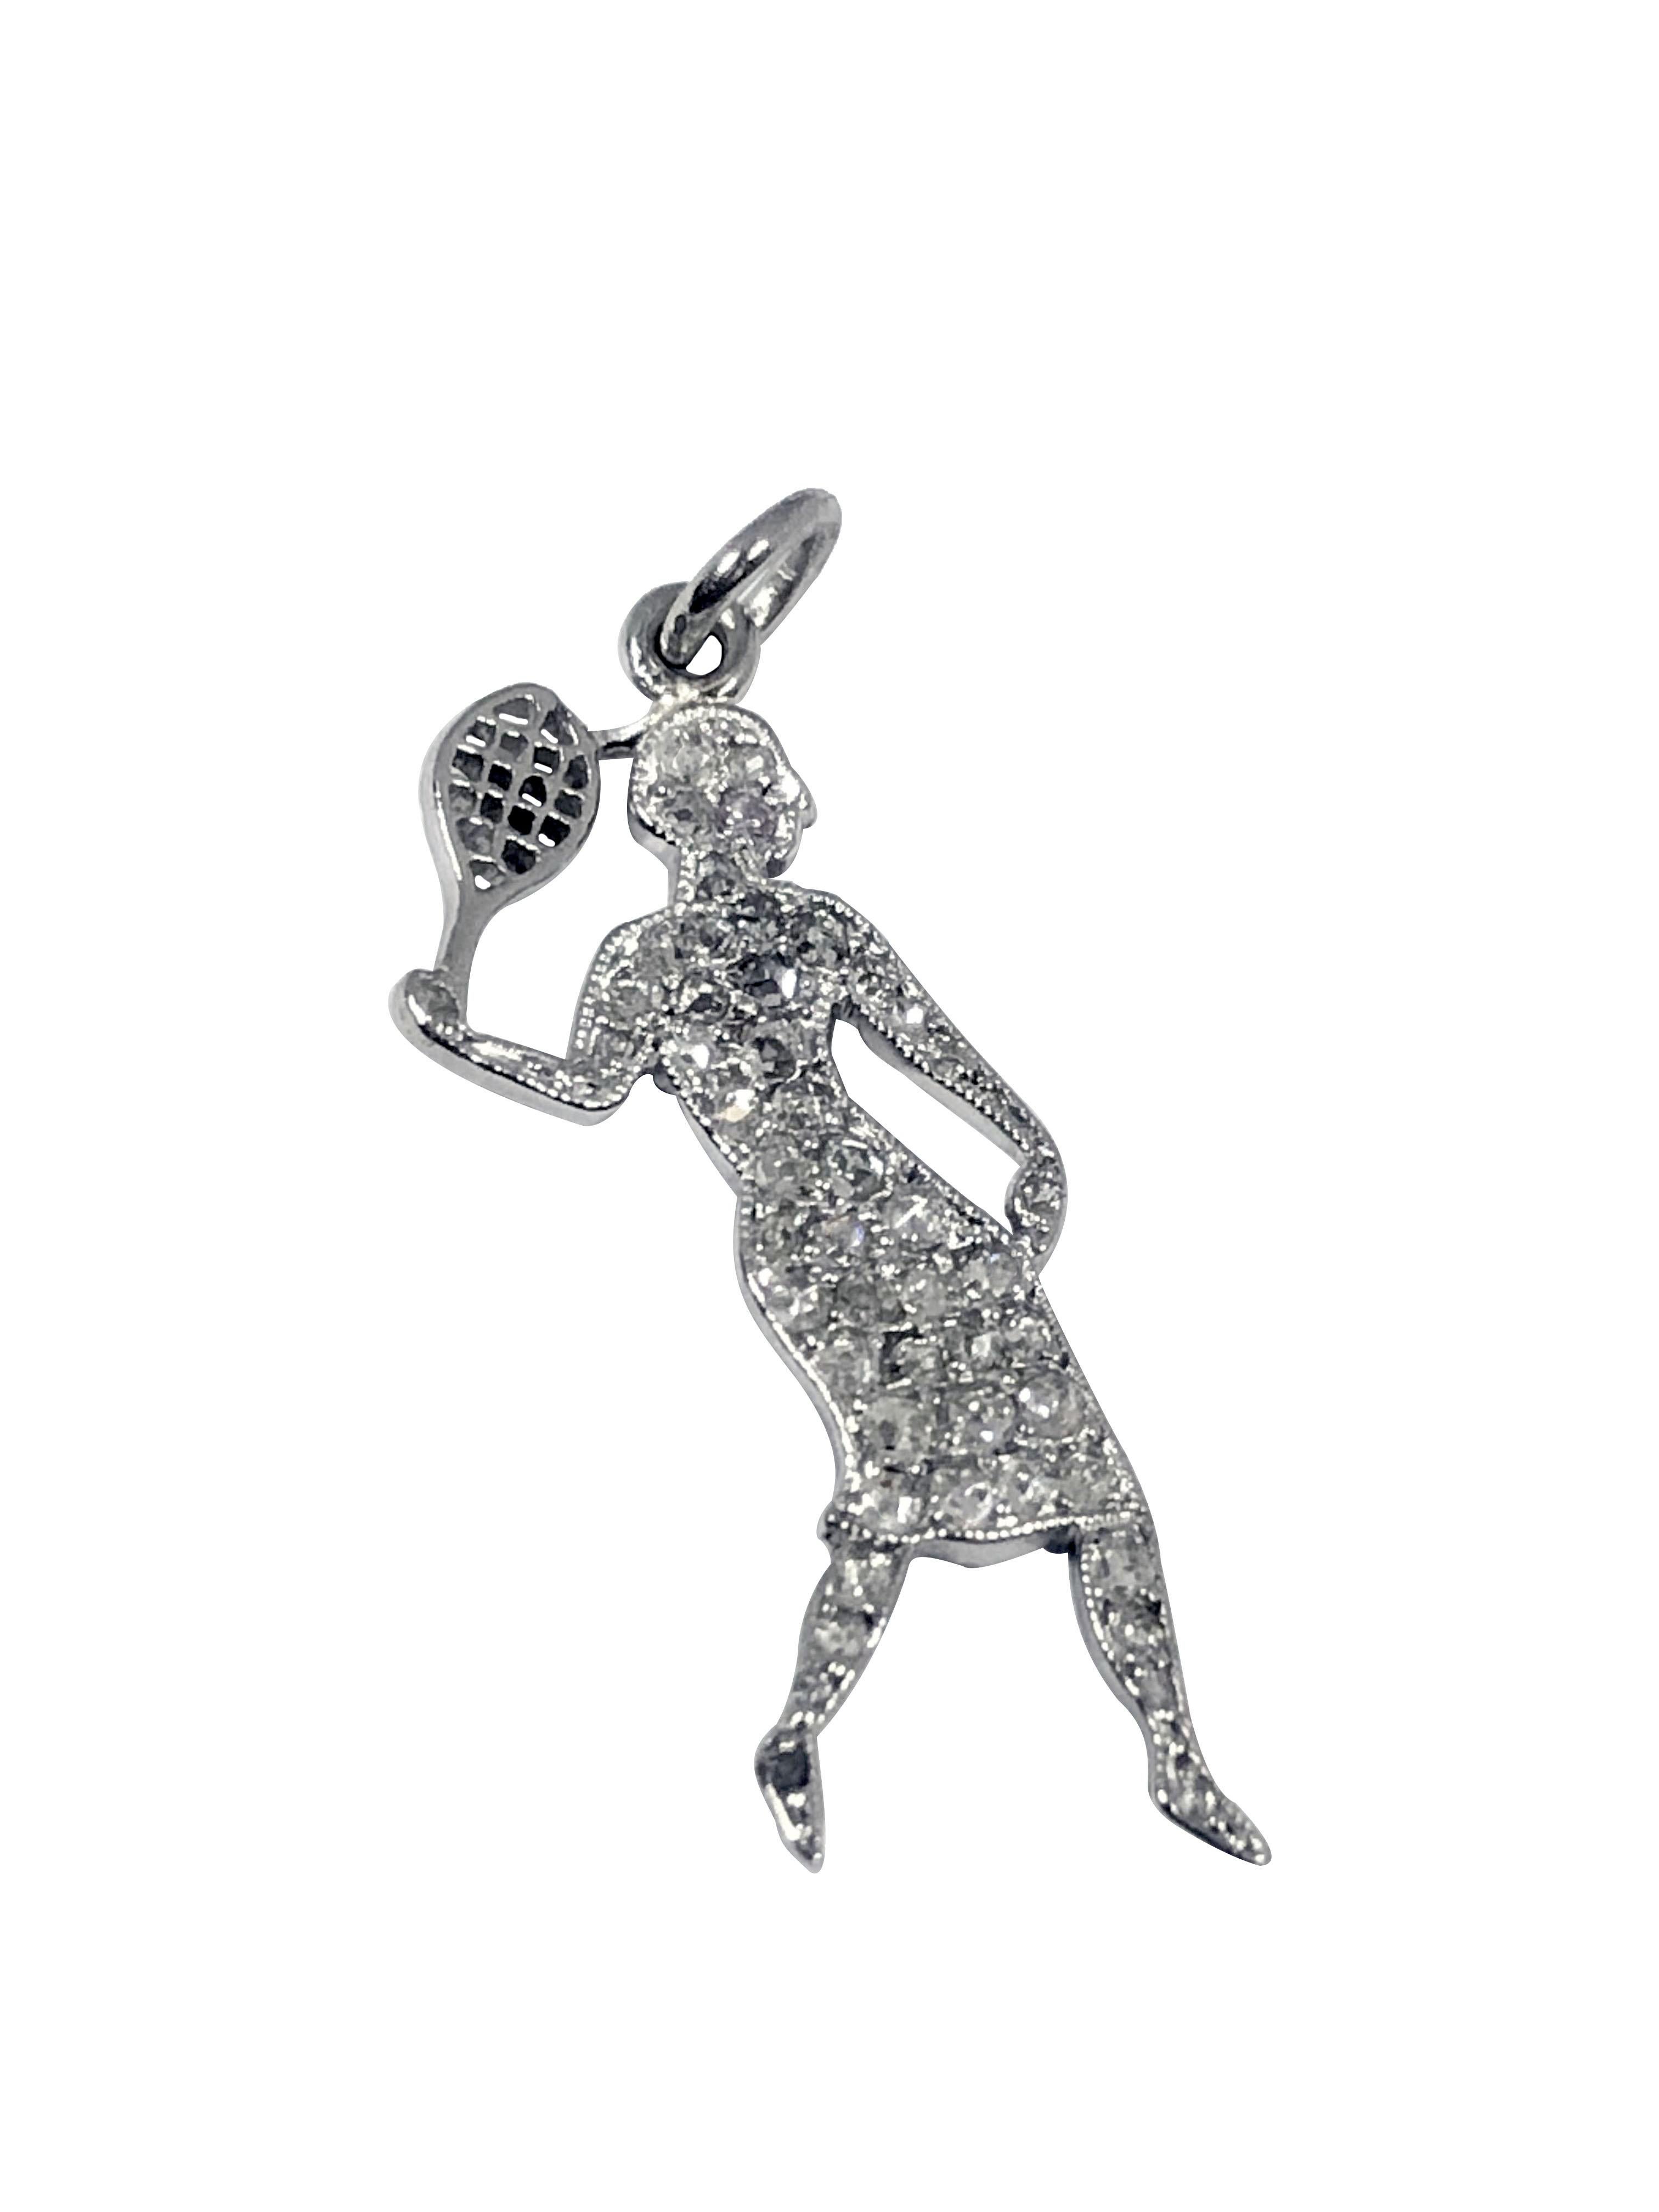 Circa 1930s Cartier France Charm Bracelet Charm en forme d'un joueur de tennis, mesurant 1 pouce en longueur et 3/8 pouces de large, très détaillé et serti de diamants taillés en Rose.